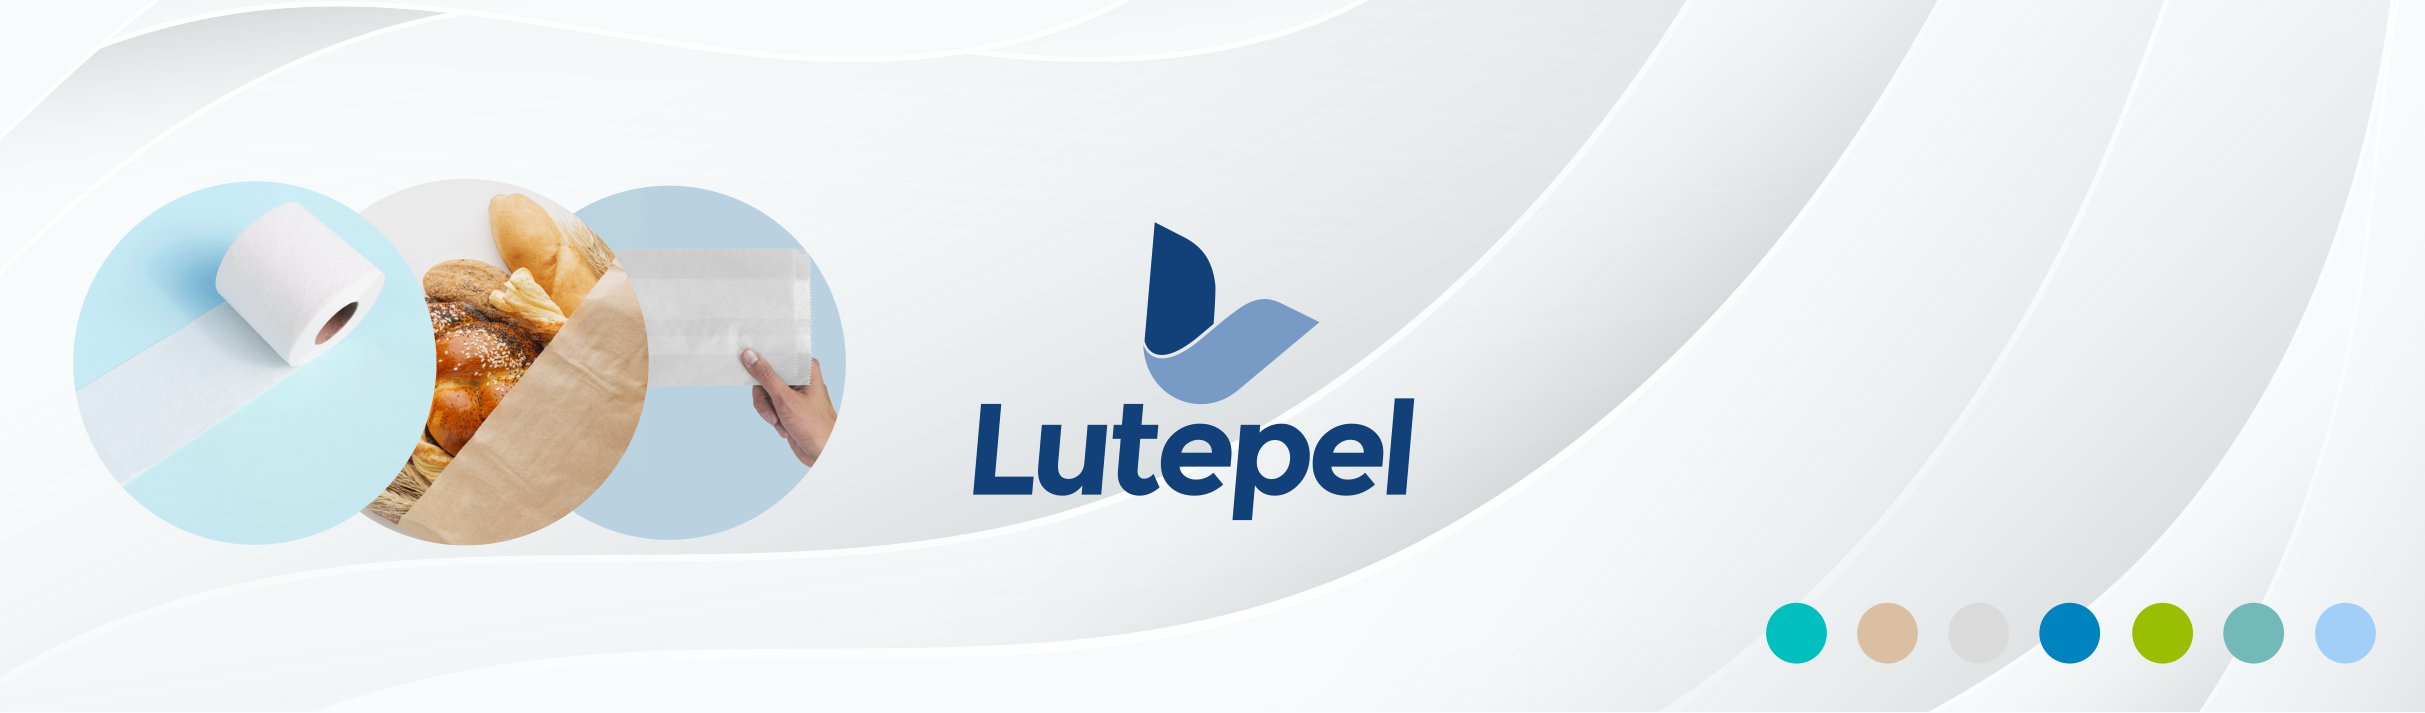 Lutepel se destaca na produção de papel monolúcido